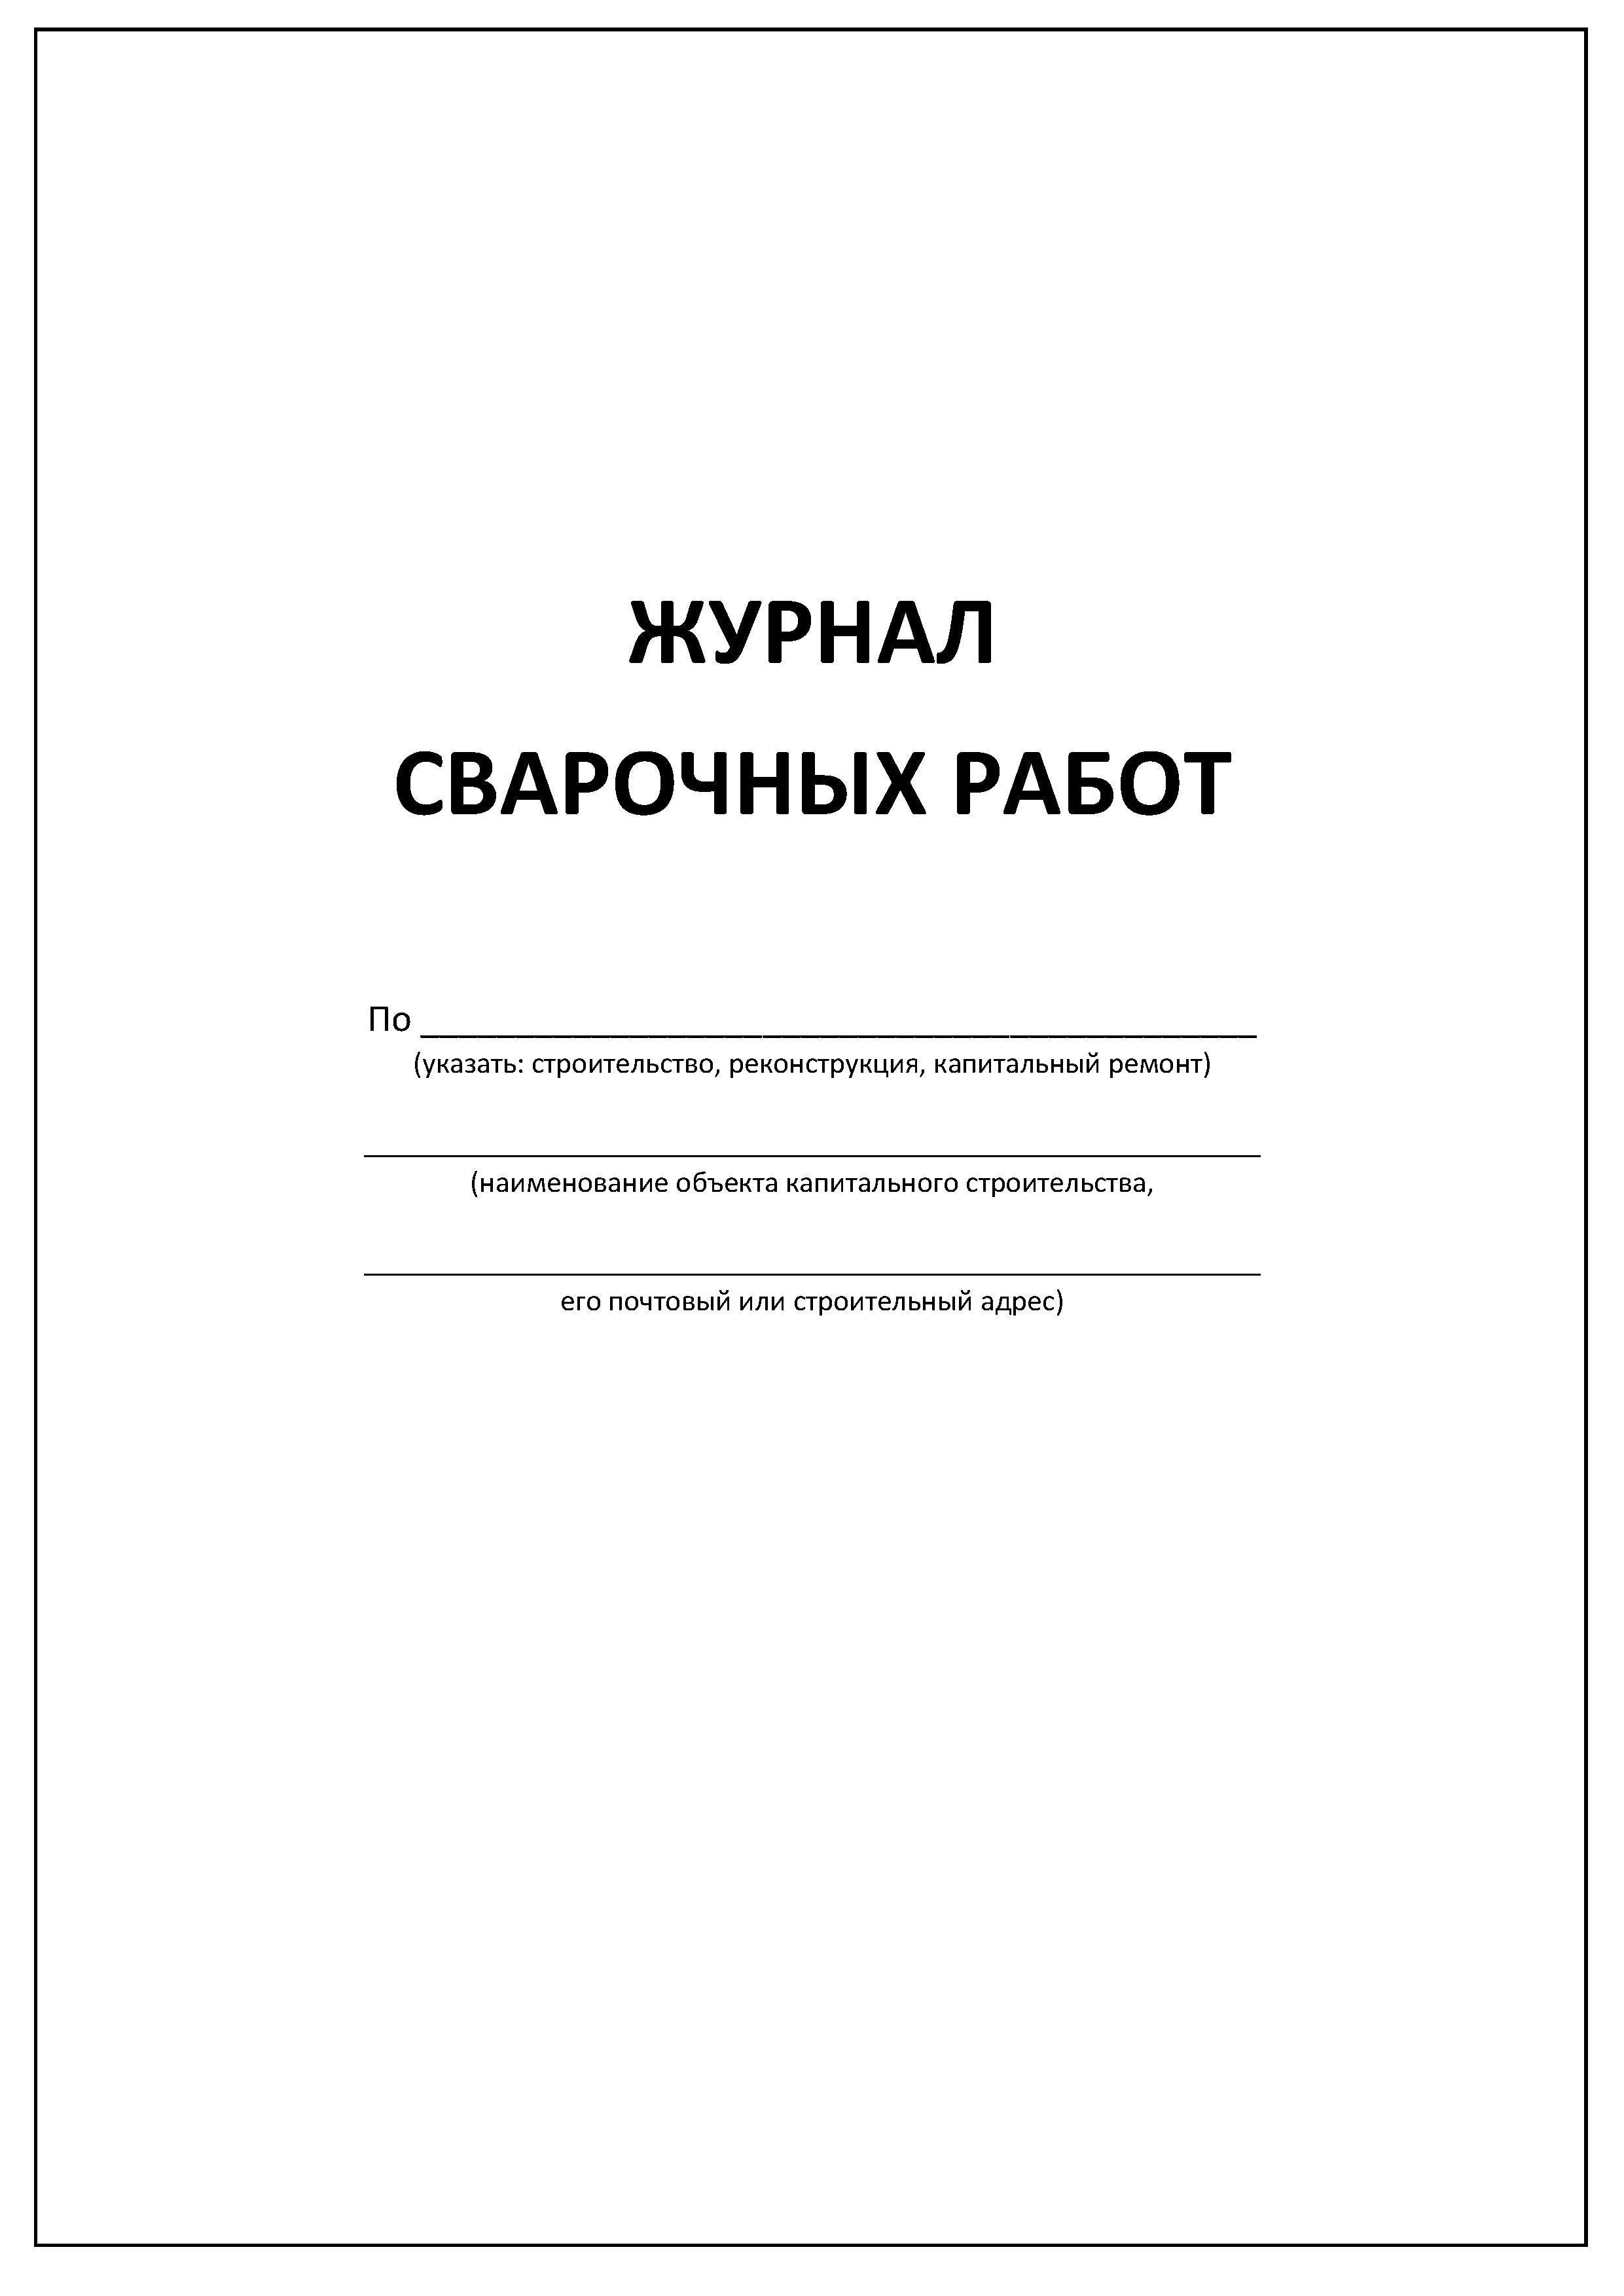 Журнал сварочных работ (ГОСТ Р 54892-2012)